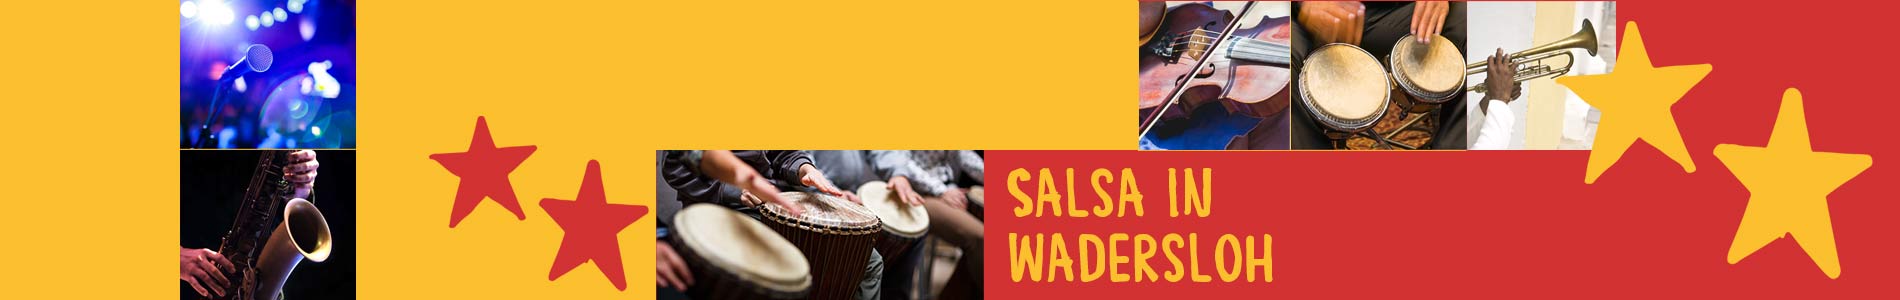 Salsa in Wadersloh – Salsa lernen und tanzen, Tanzkurse, Partys, Veranstaltungen